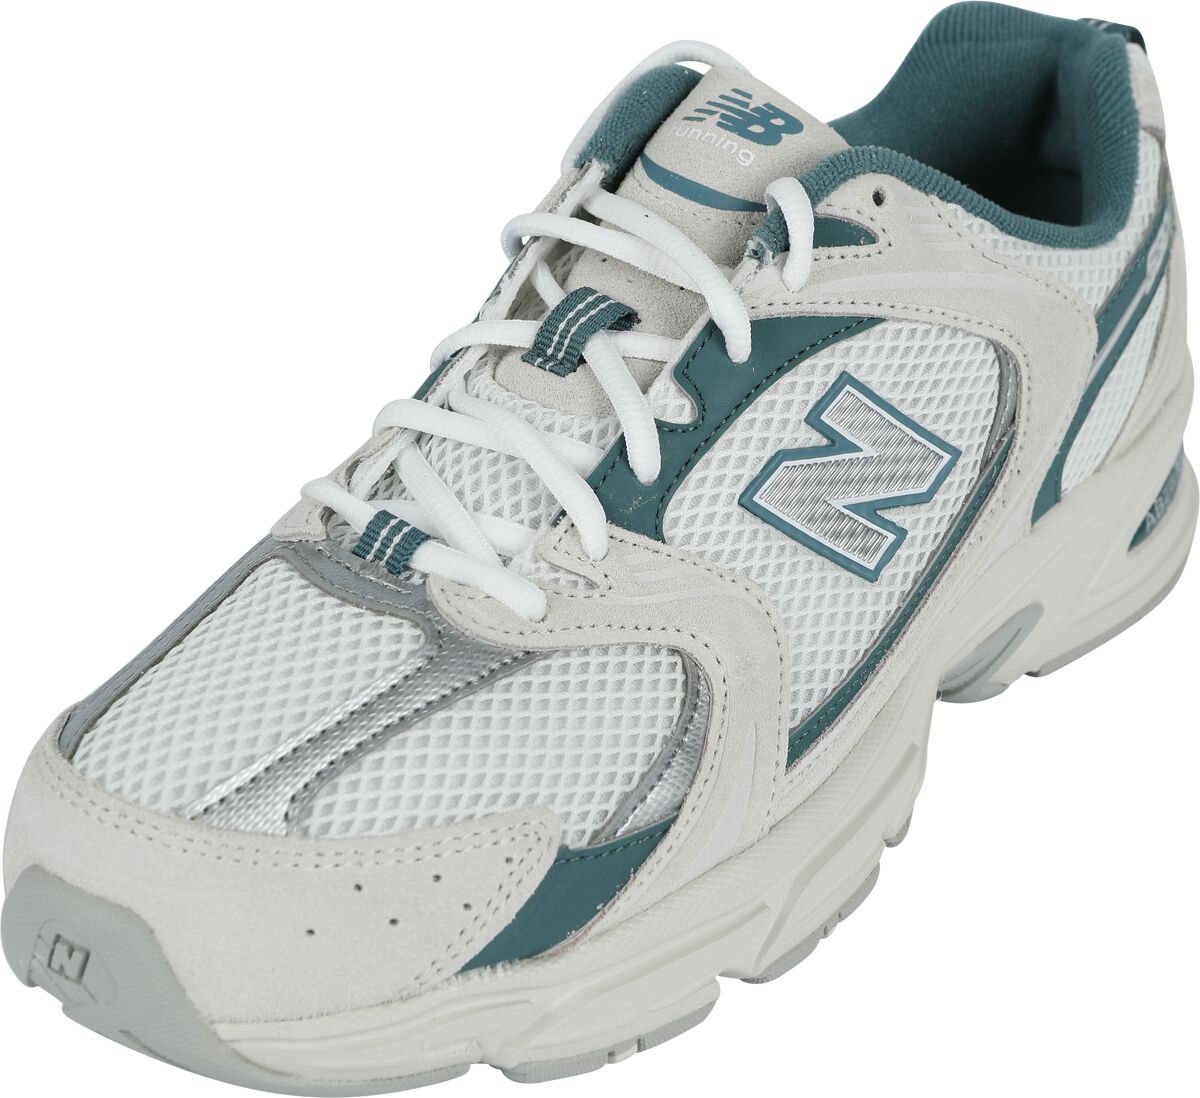 New Balance Sneaker - 530 - EU41 bis 5 - für Männer - Größe EU46,5 - multicolor von New Balance